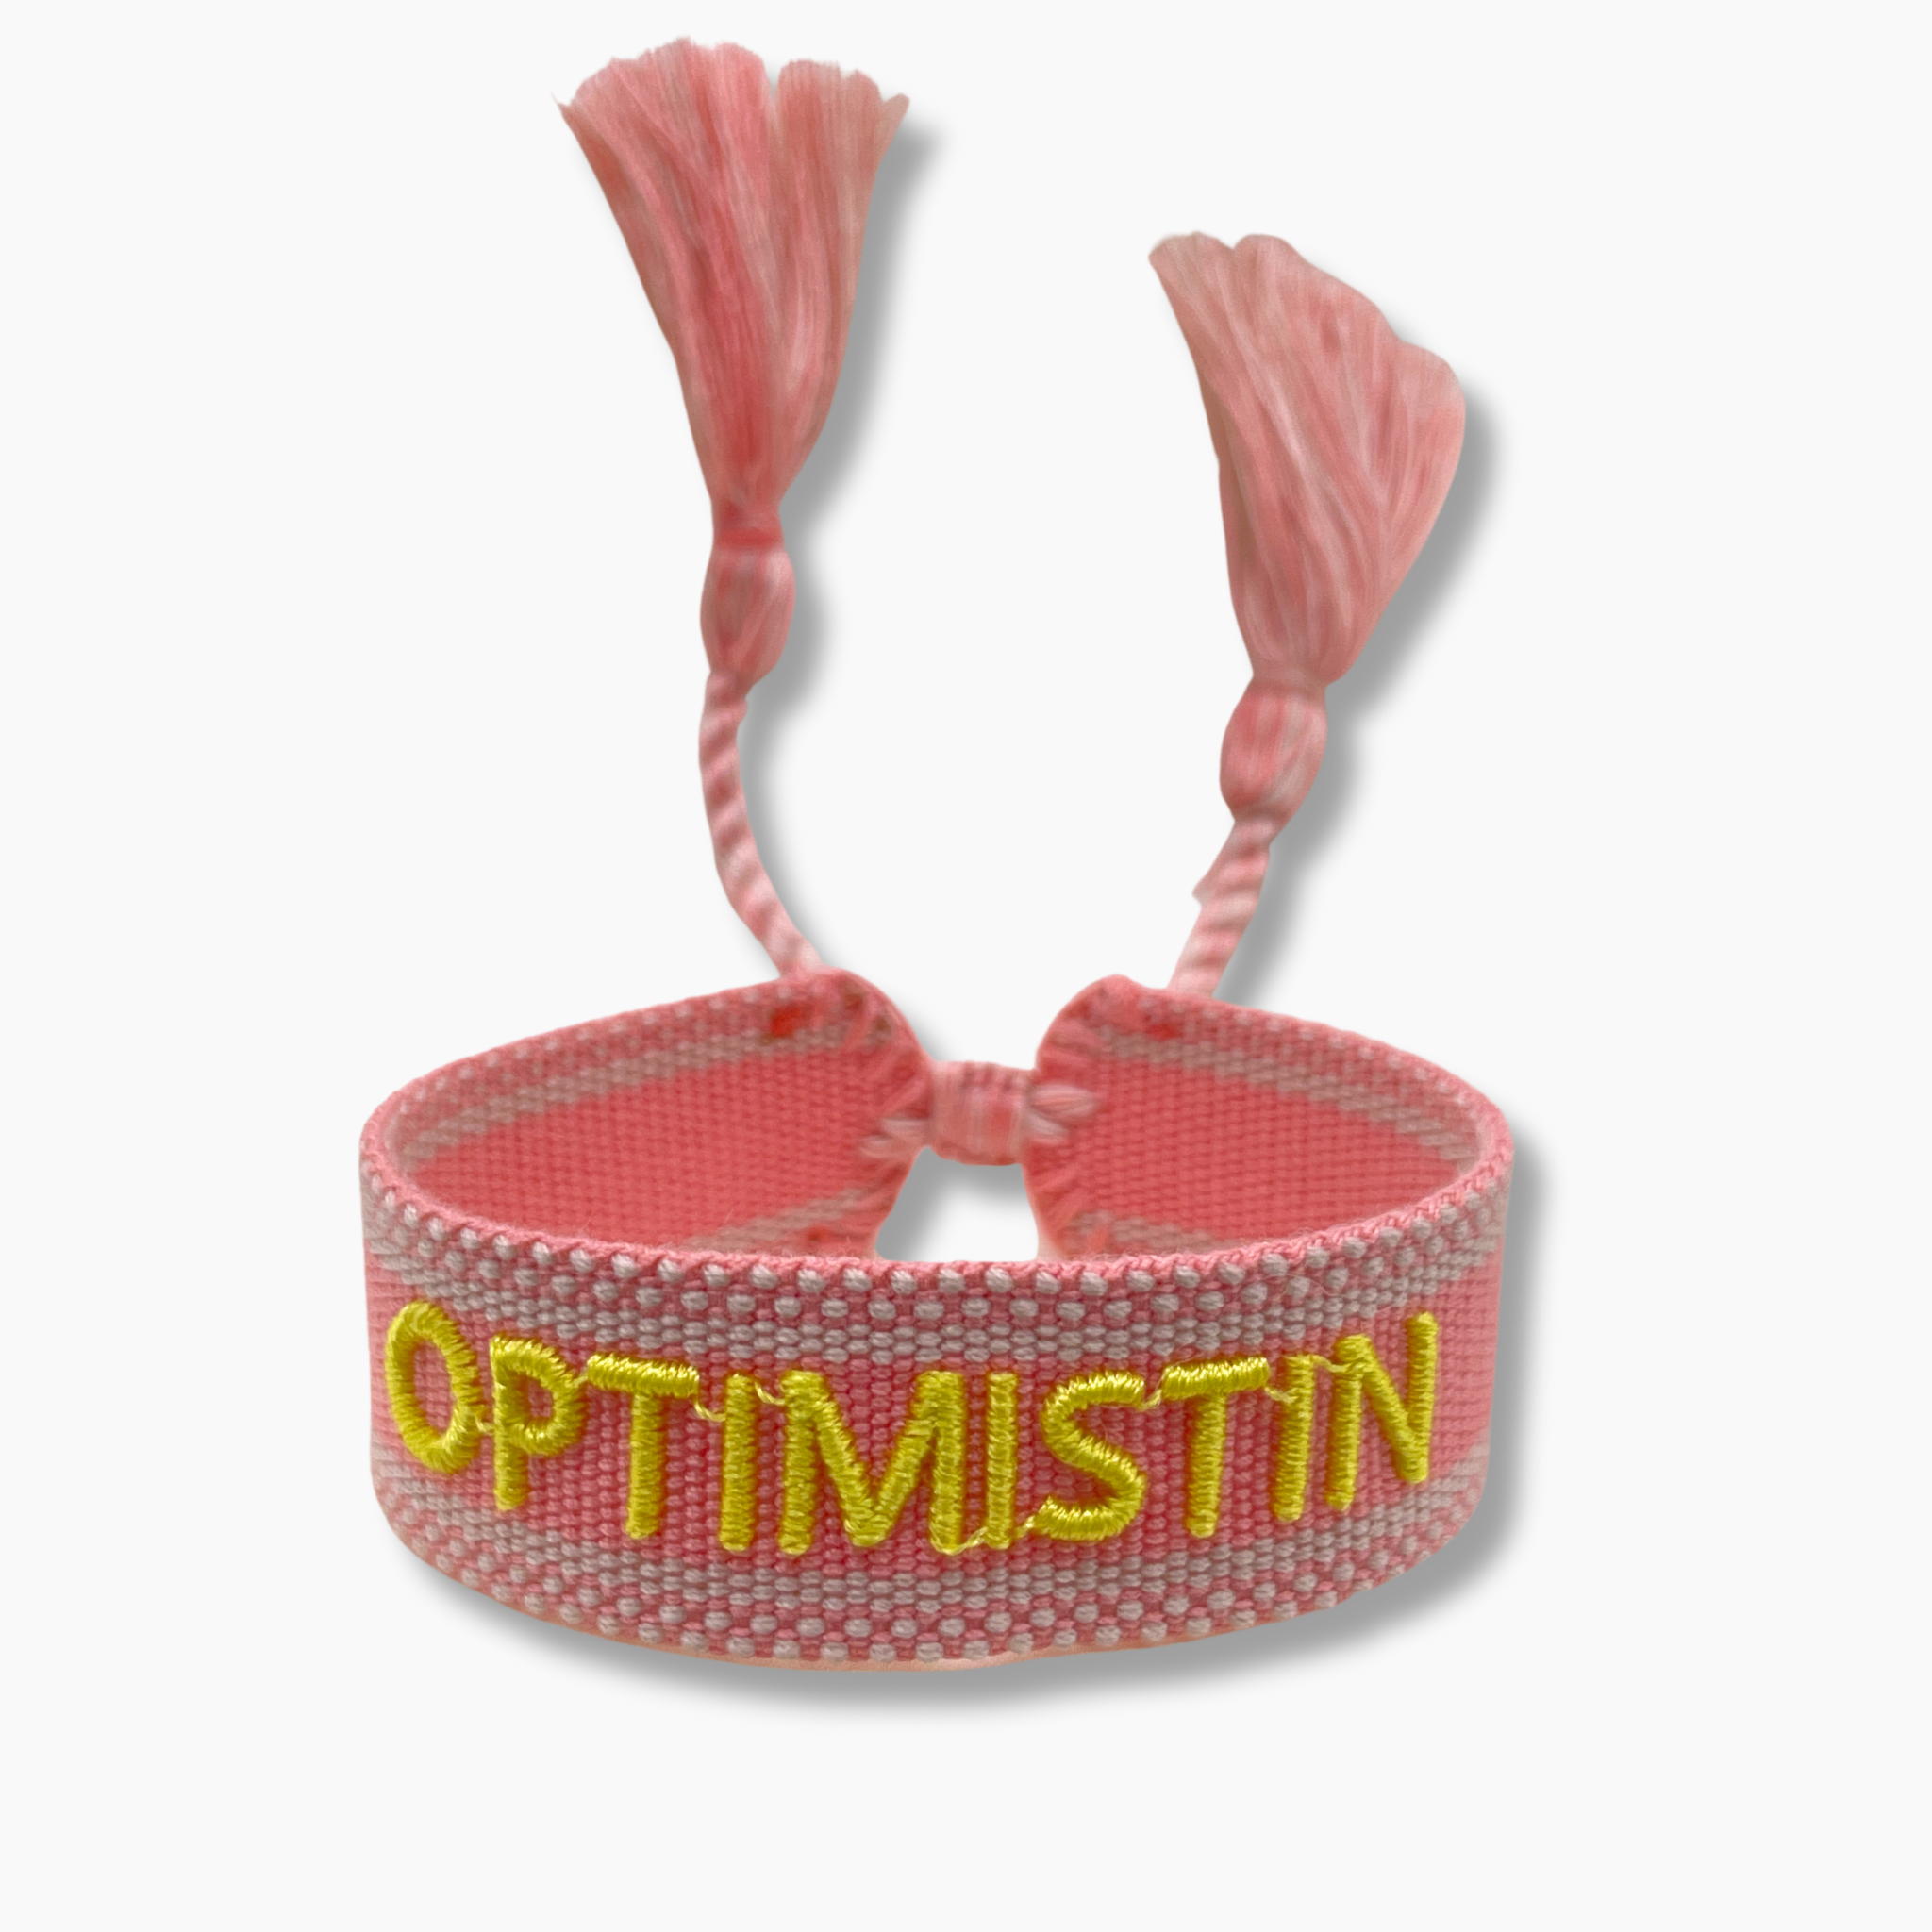 Festival Bracelet Optimistin